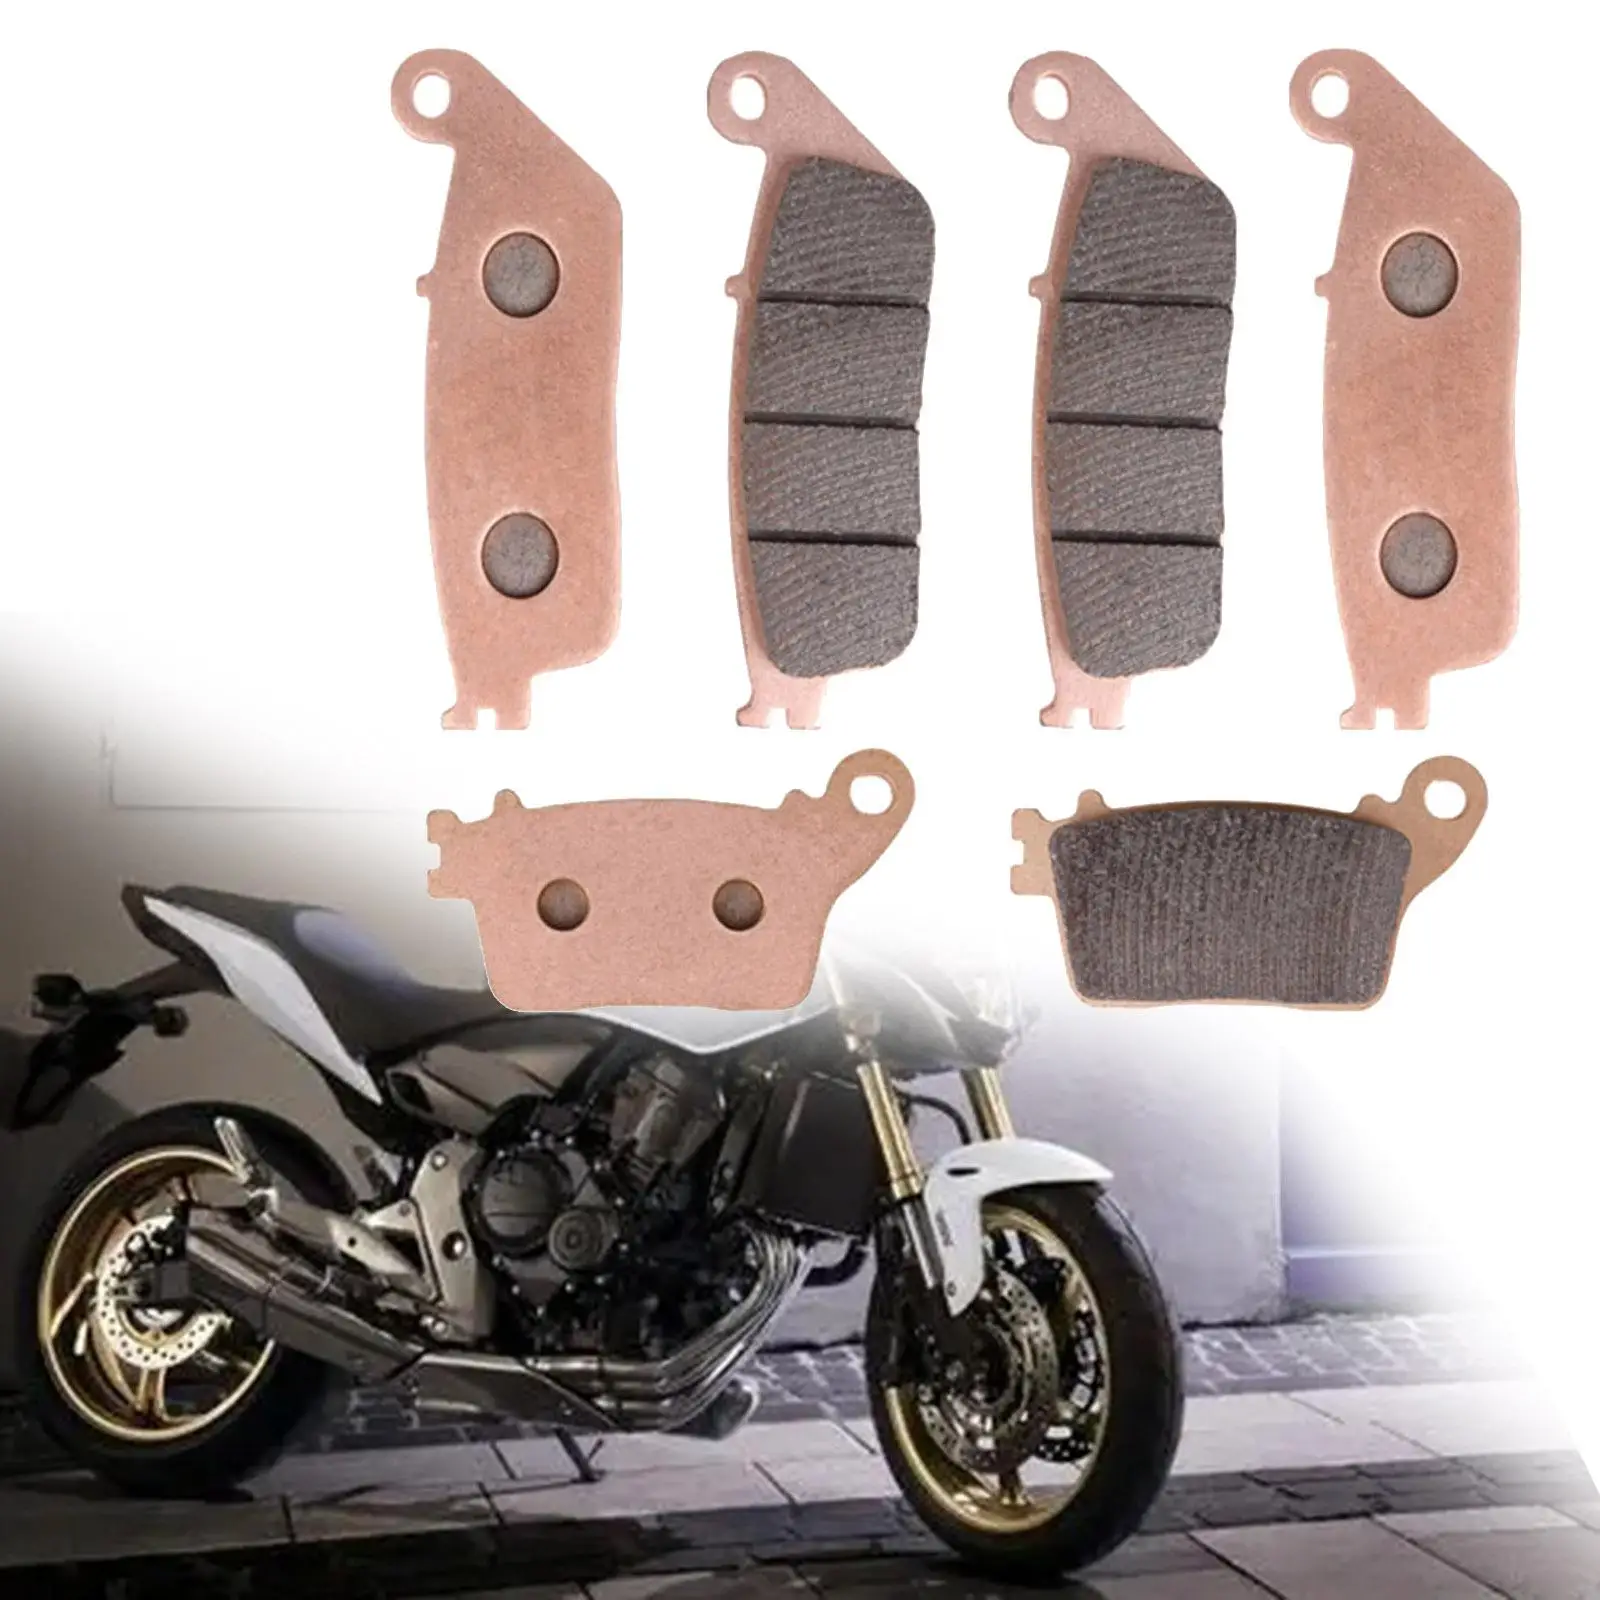 6x Front Rear Brake Pads Set Brake Pads Set Accessories for Honda Repair Part